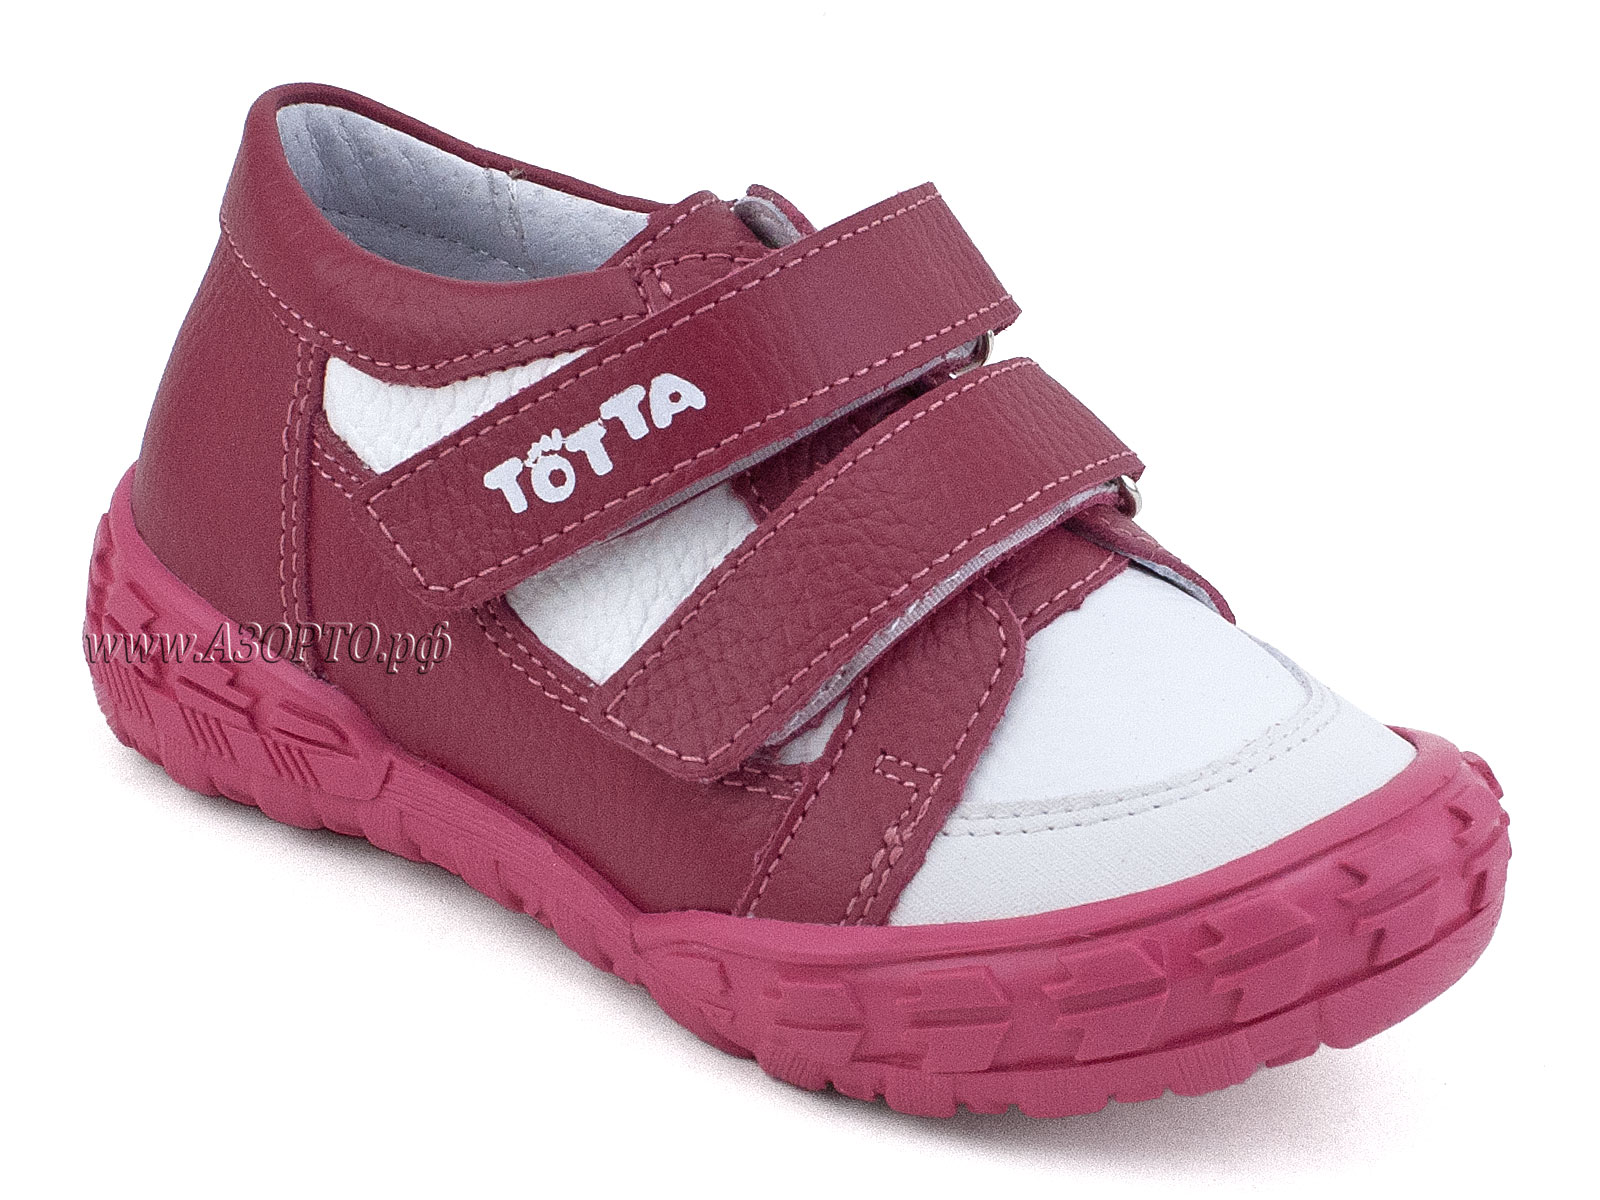 Totto Детская Обувь Интернет Магазин